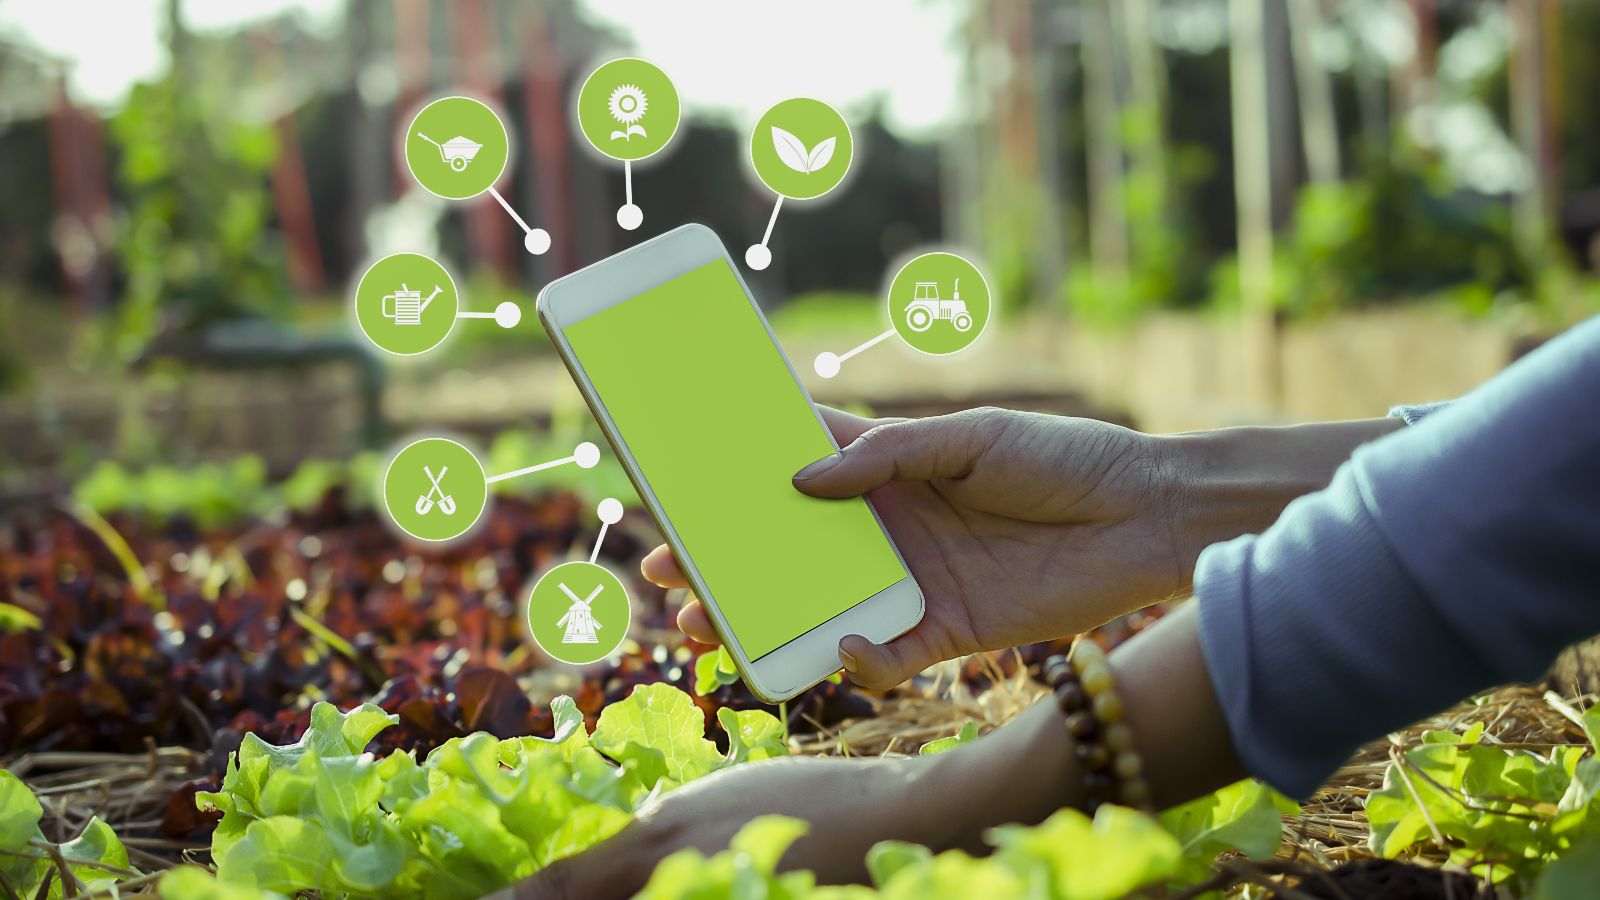 Eine Frau hebt mit einer Hand die Blätter einer wachsenden Salatpflanze hoch. In der anderen Hand hält sie ihr Smartphone, welches von Piktpogrammen zur Gartenarbeit umringt ist. Im Hintergrund zeichnet sich ein gepflegter Garten ab.